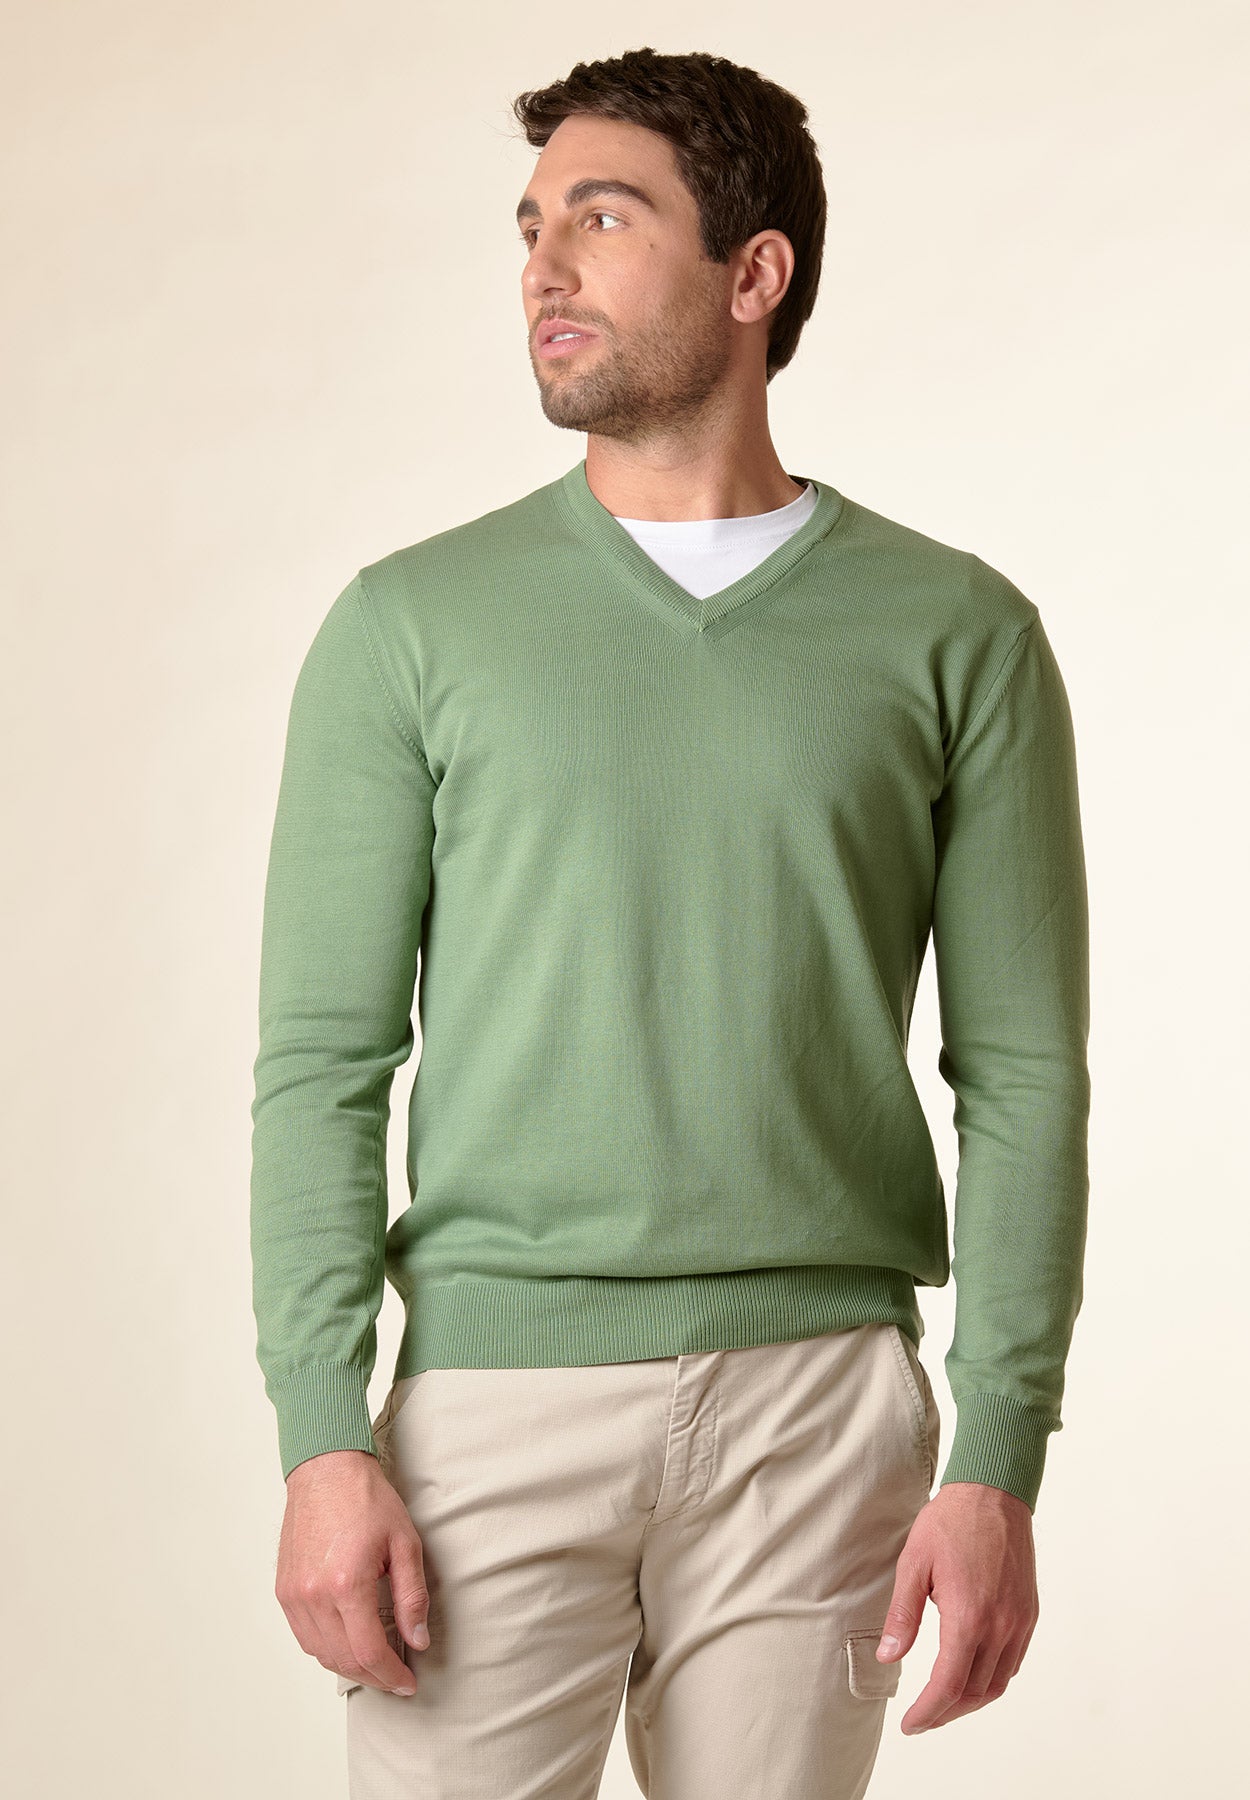 V-neck light green cotton